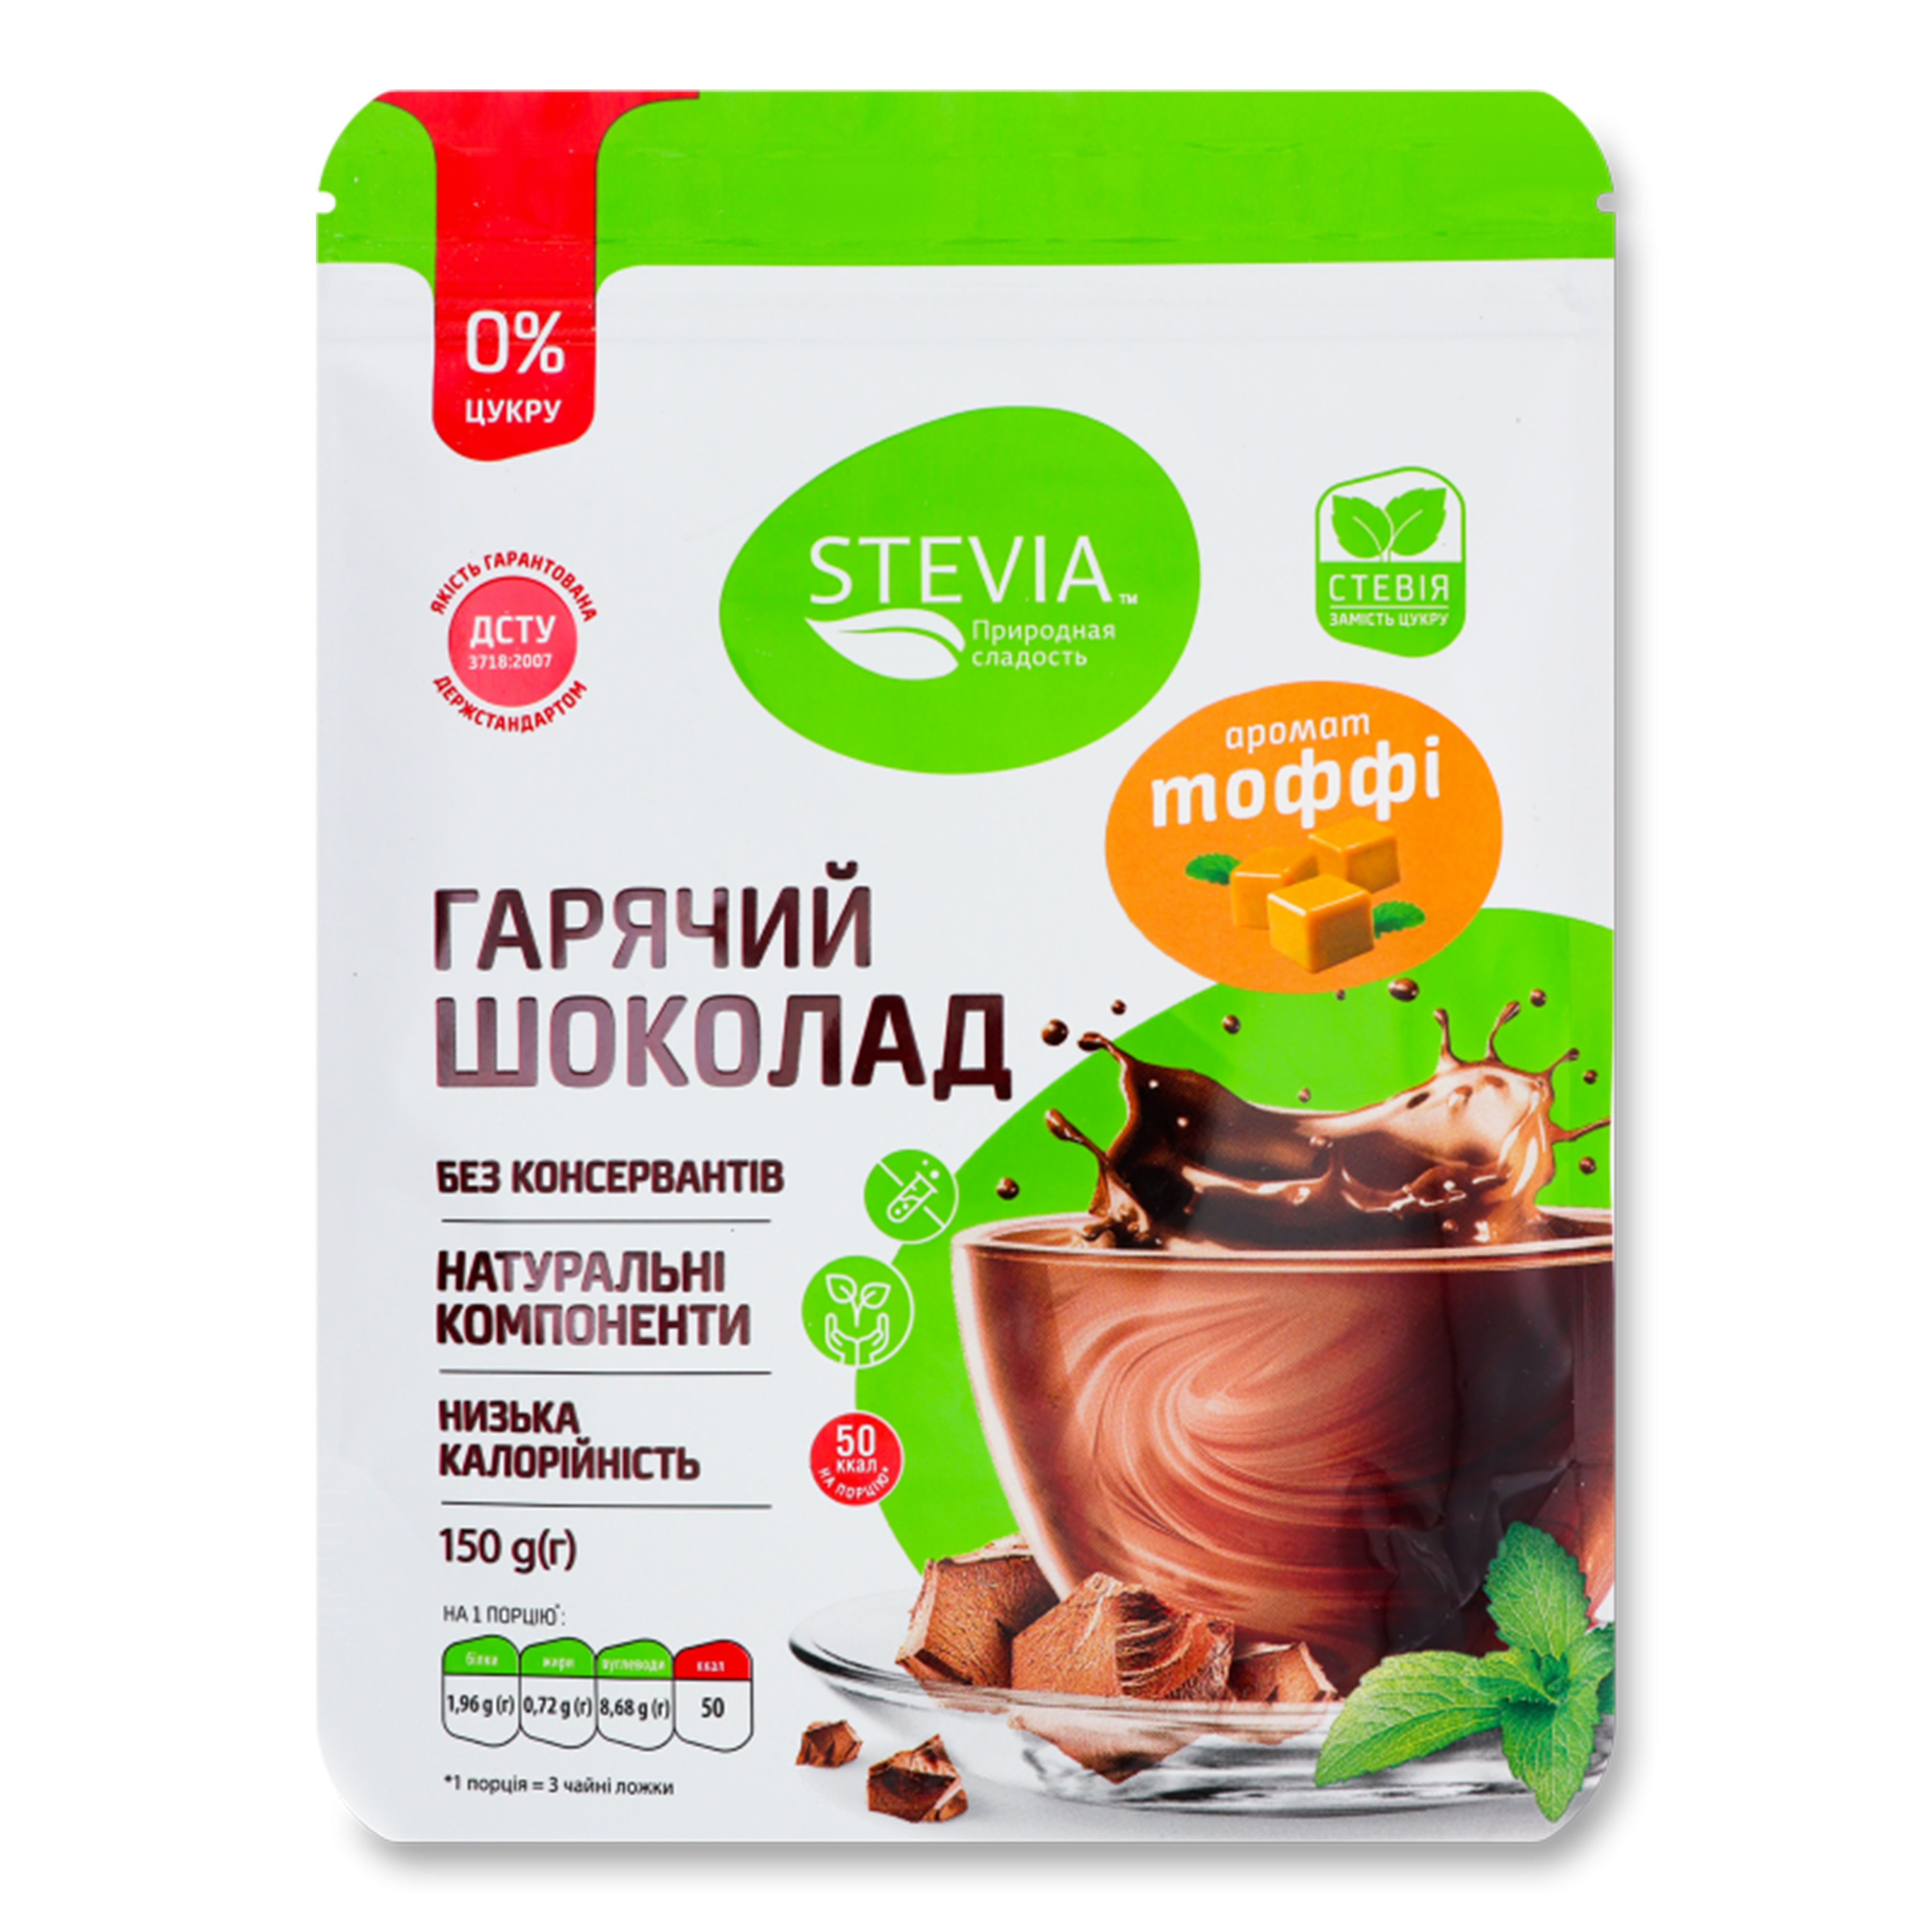 Шоколад гарячий Stevia зі смаком тоффі, 150 г. (350129)
 large popup